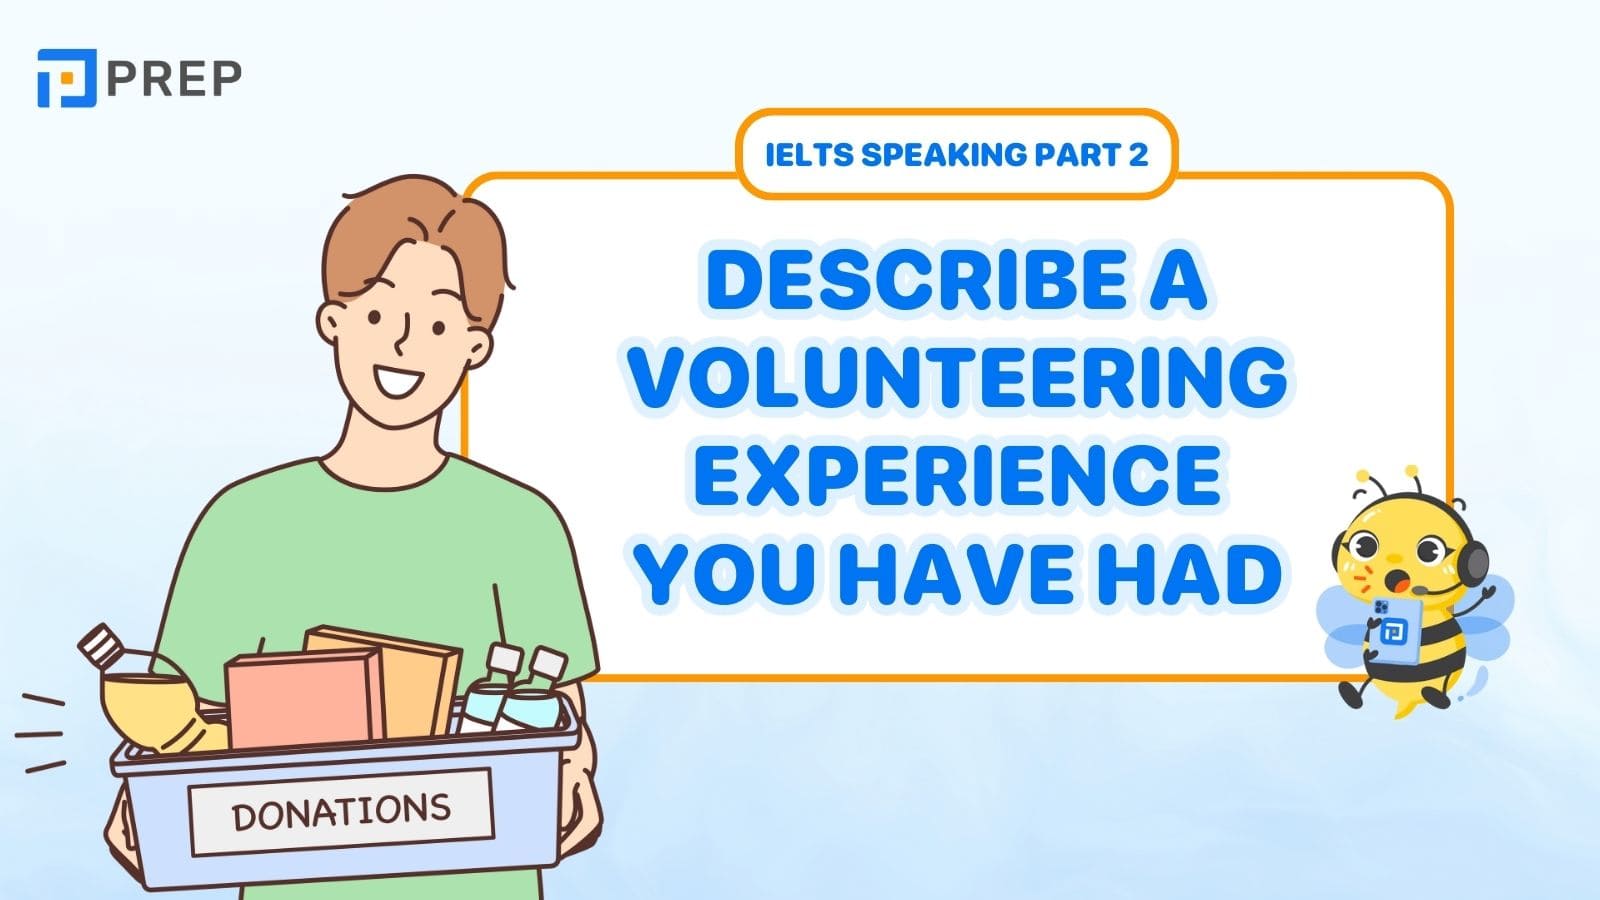 Describe a volunteering experience you have had